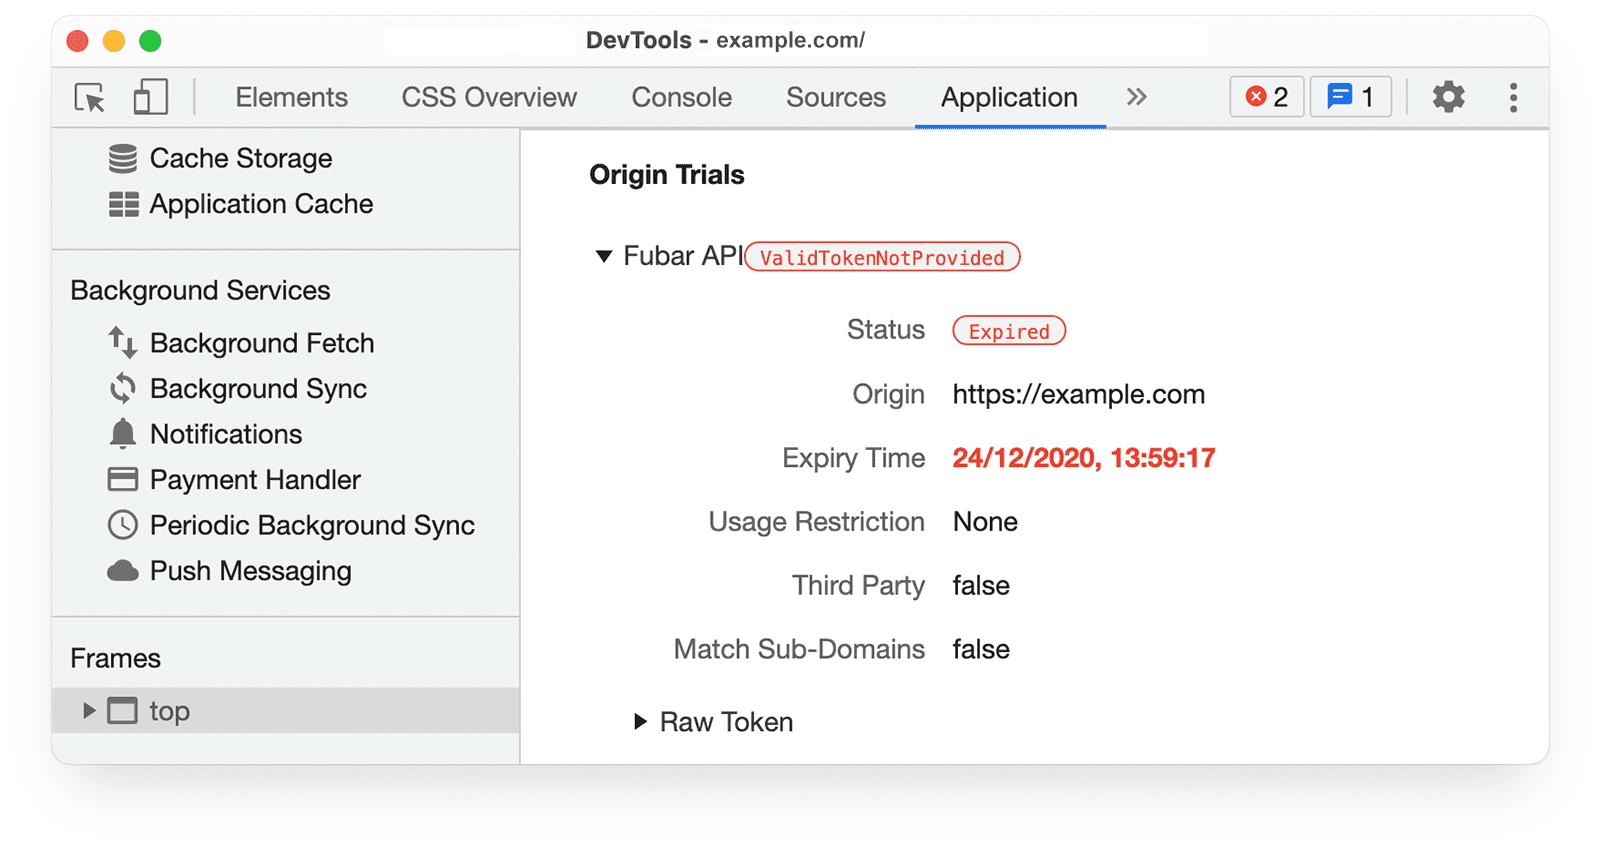 DevTools Chrome 
informasi uji coba origin di panel Application yang menampilkan token yang sudah tidak berlaku